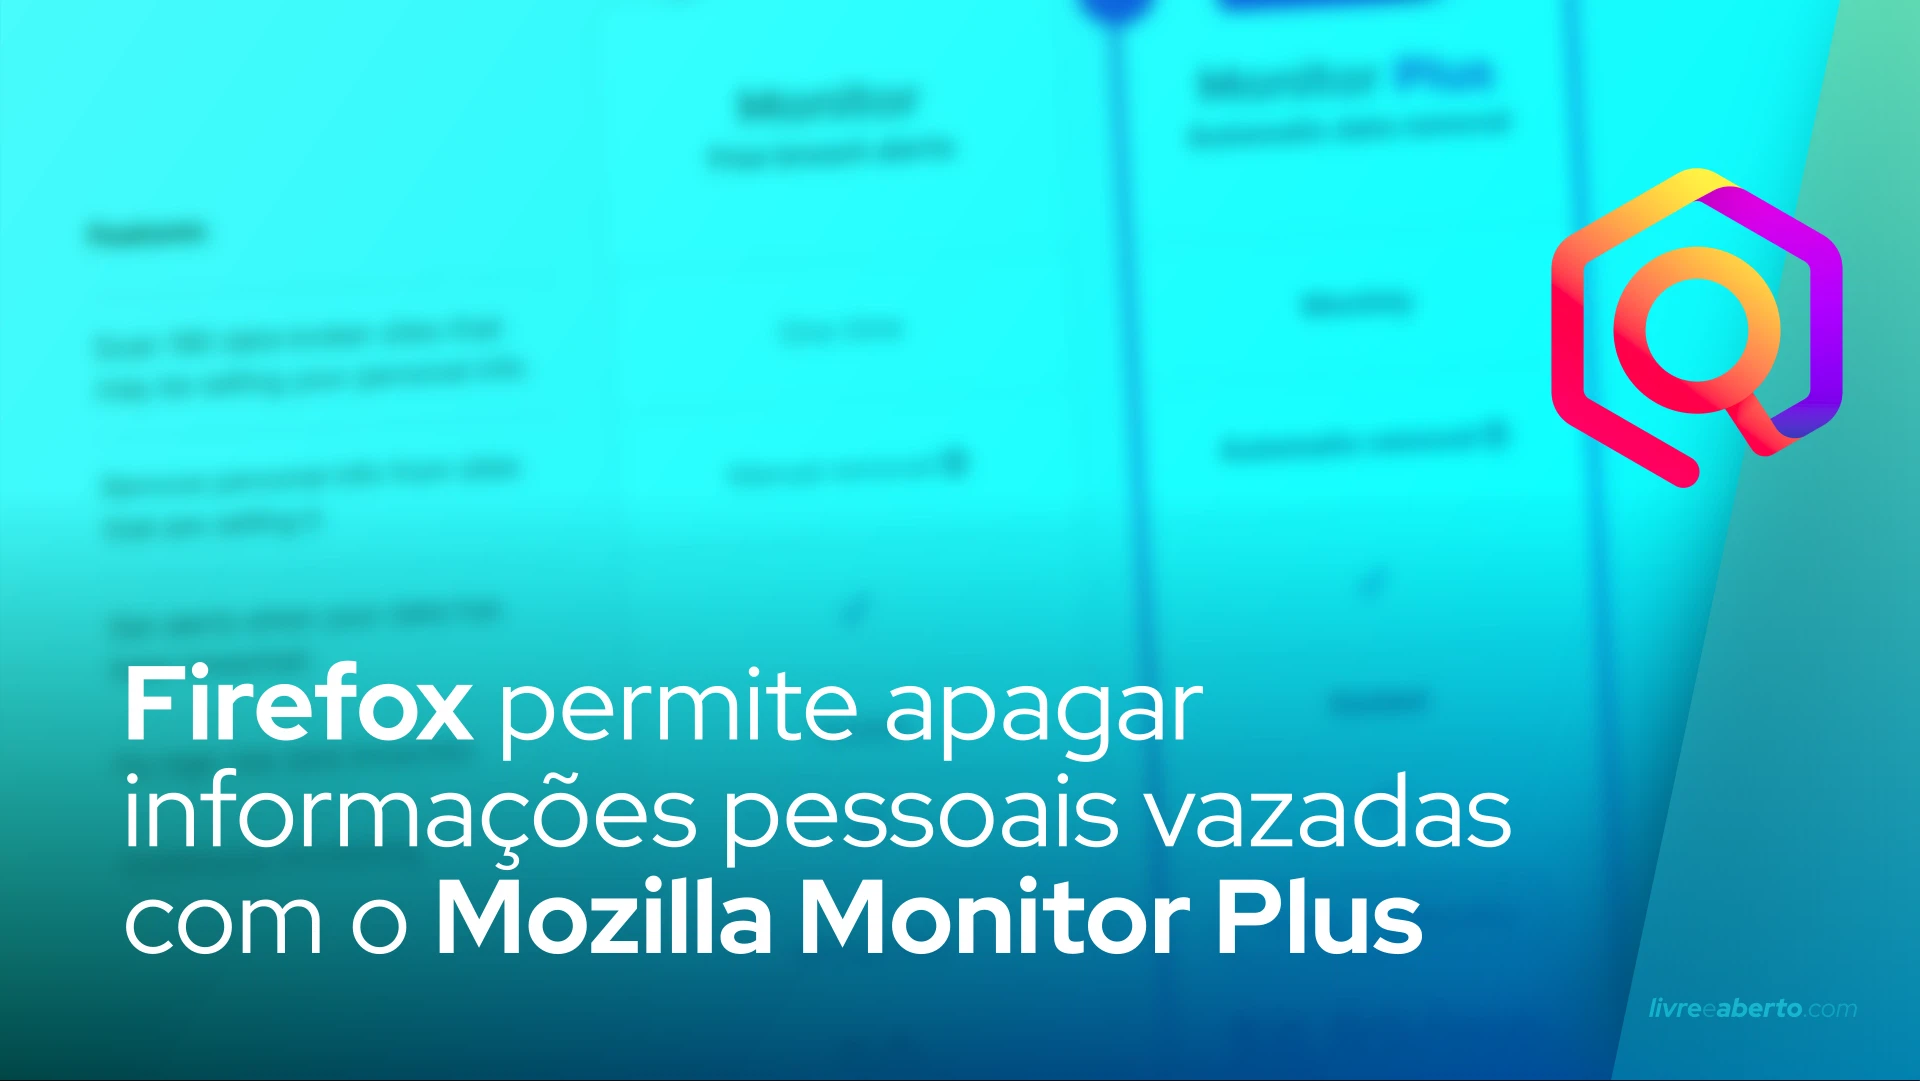 Firefox permite apagar informações pessoais vazadas com o Mozilla Monitor Plus